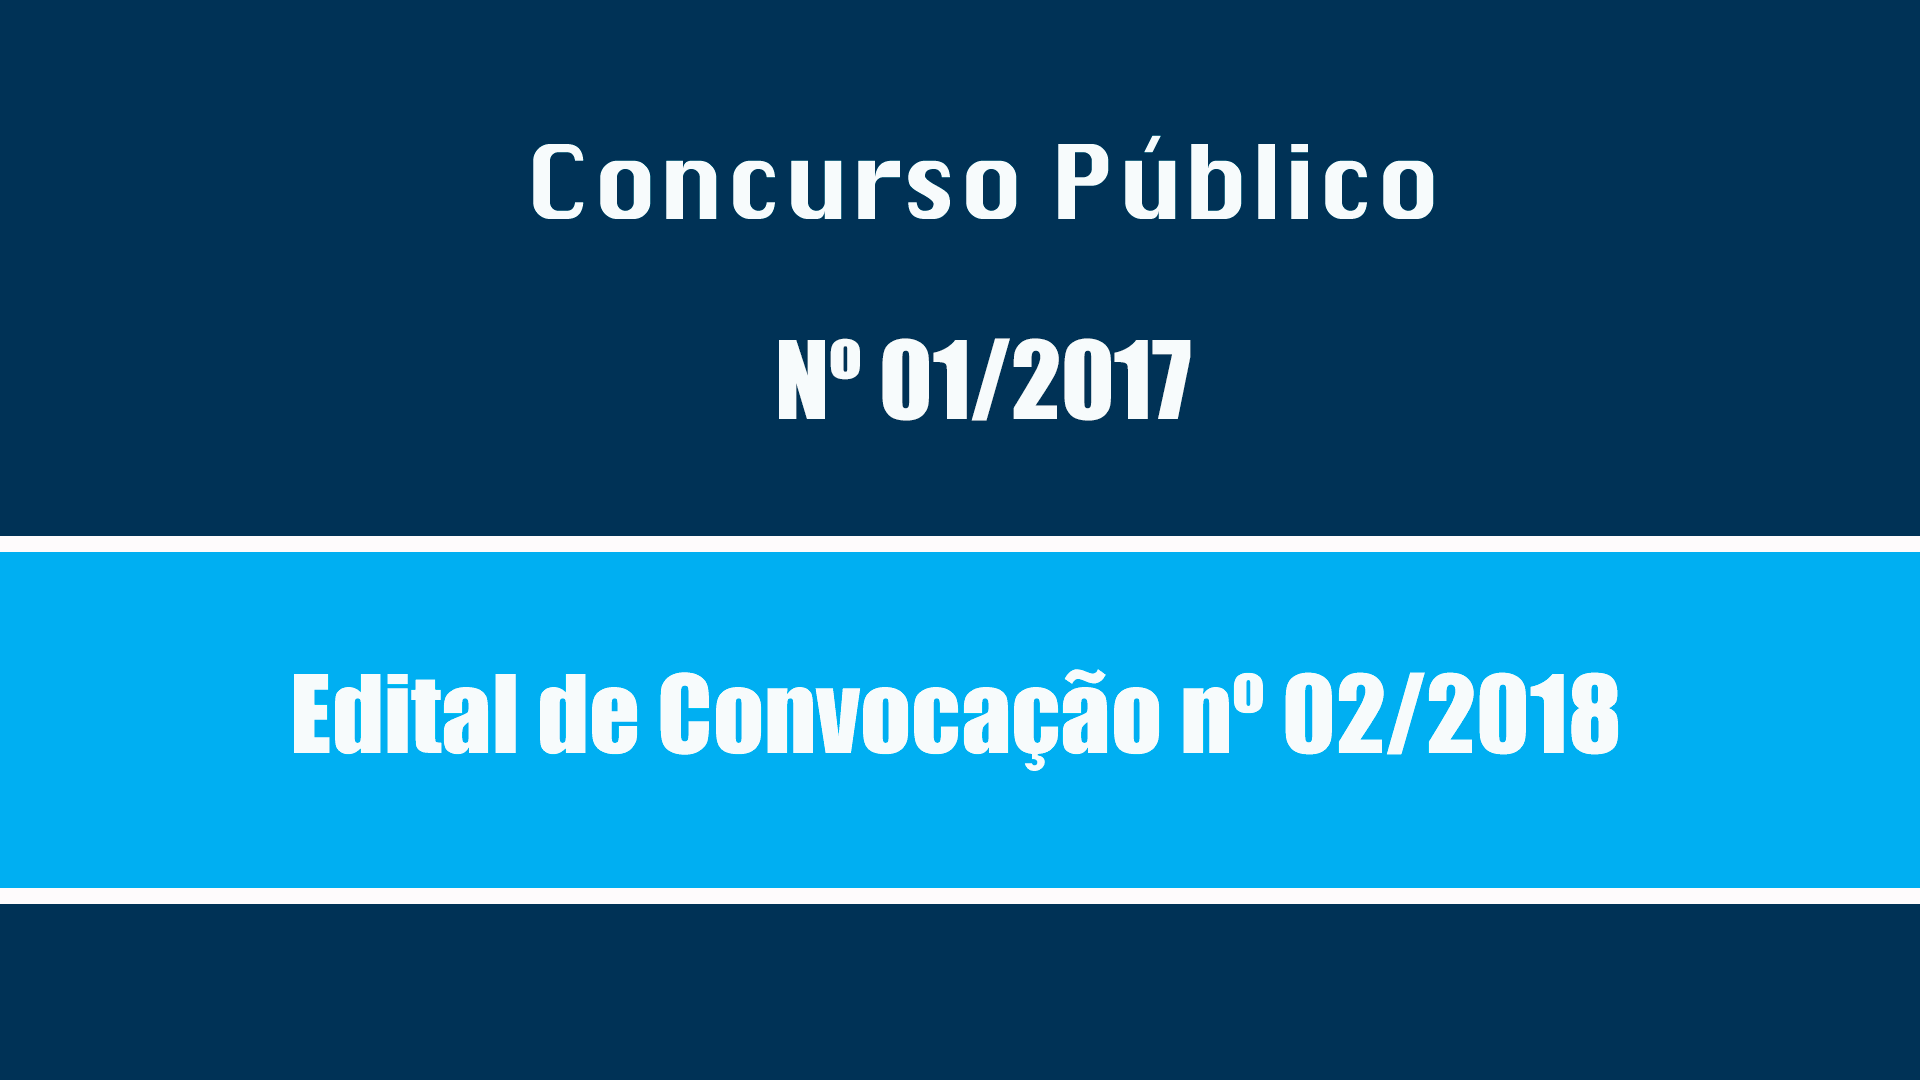 CONCURSO PÚBLICO Nº 001/201/ - EDITAL DE CONVOCAÇÃO Nº 02/2018